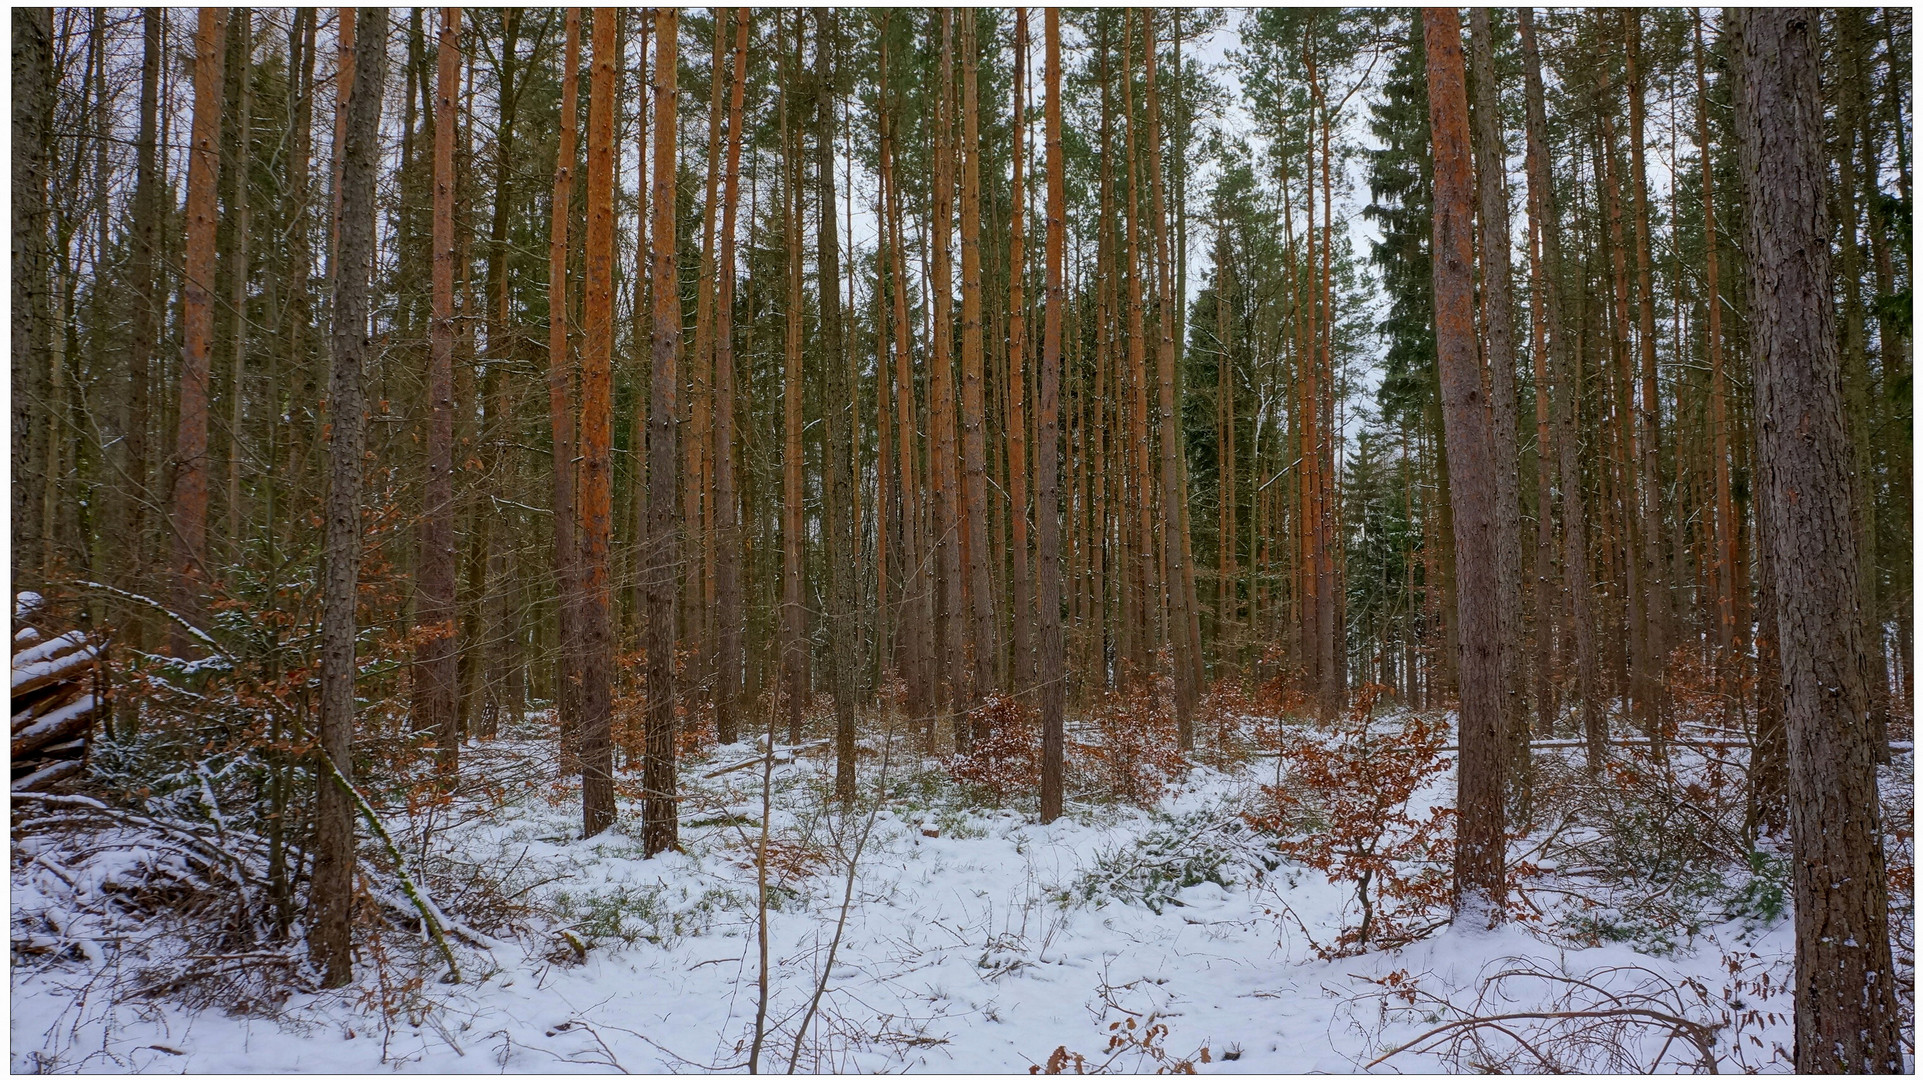 Spaziergang durch den Wald II (paseando por el bosque II)